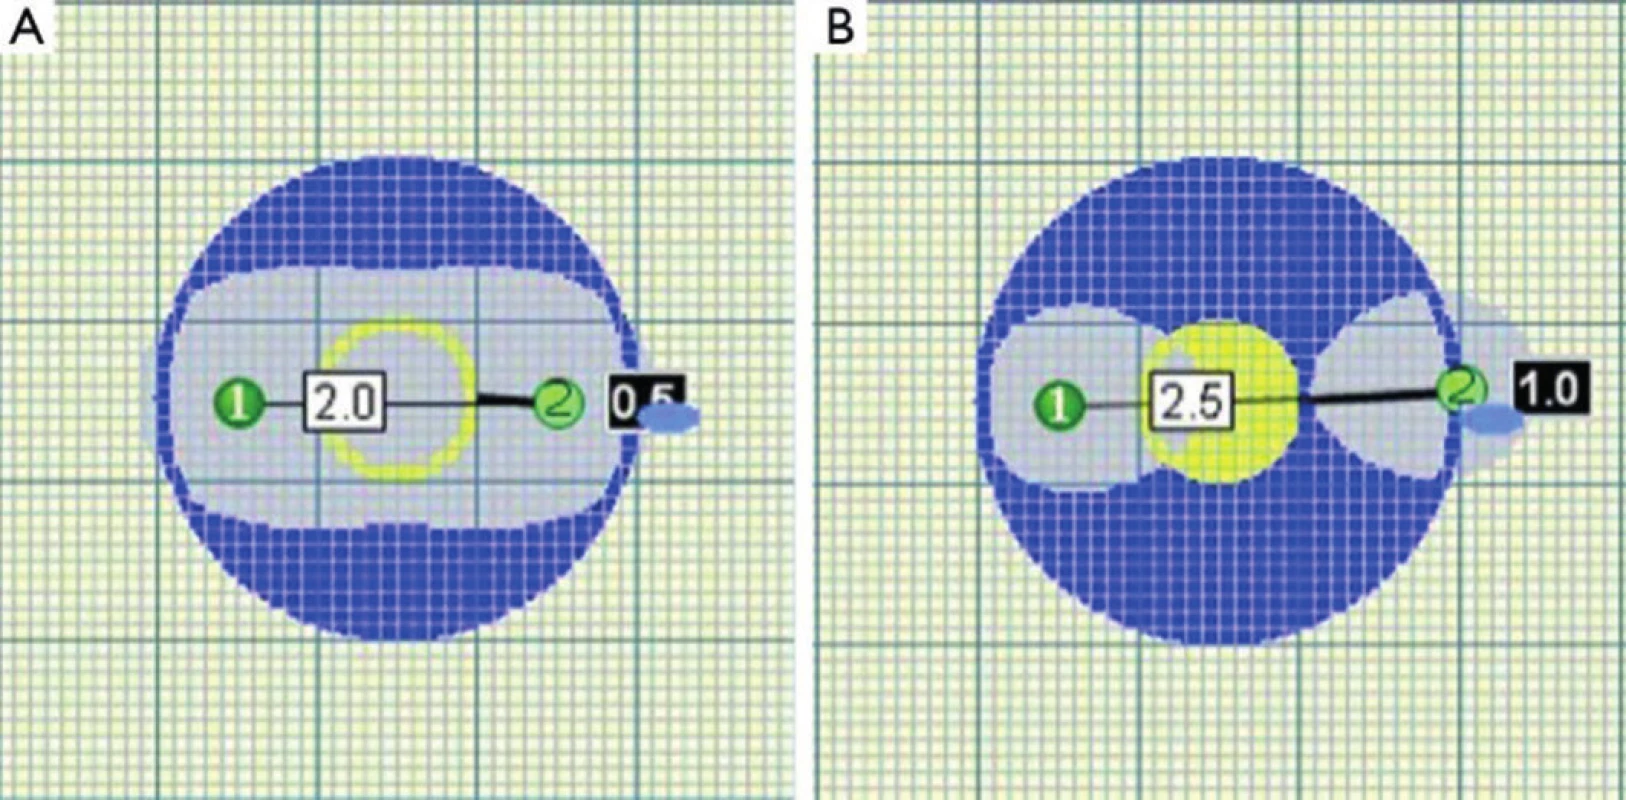 Překročení kritické vzdálenosti elektrod vede k porušení homogenity zóny ablace
Fig. 3. Homogenity of ablated area is impaired when critical distance of probes is exceeded